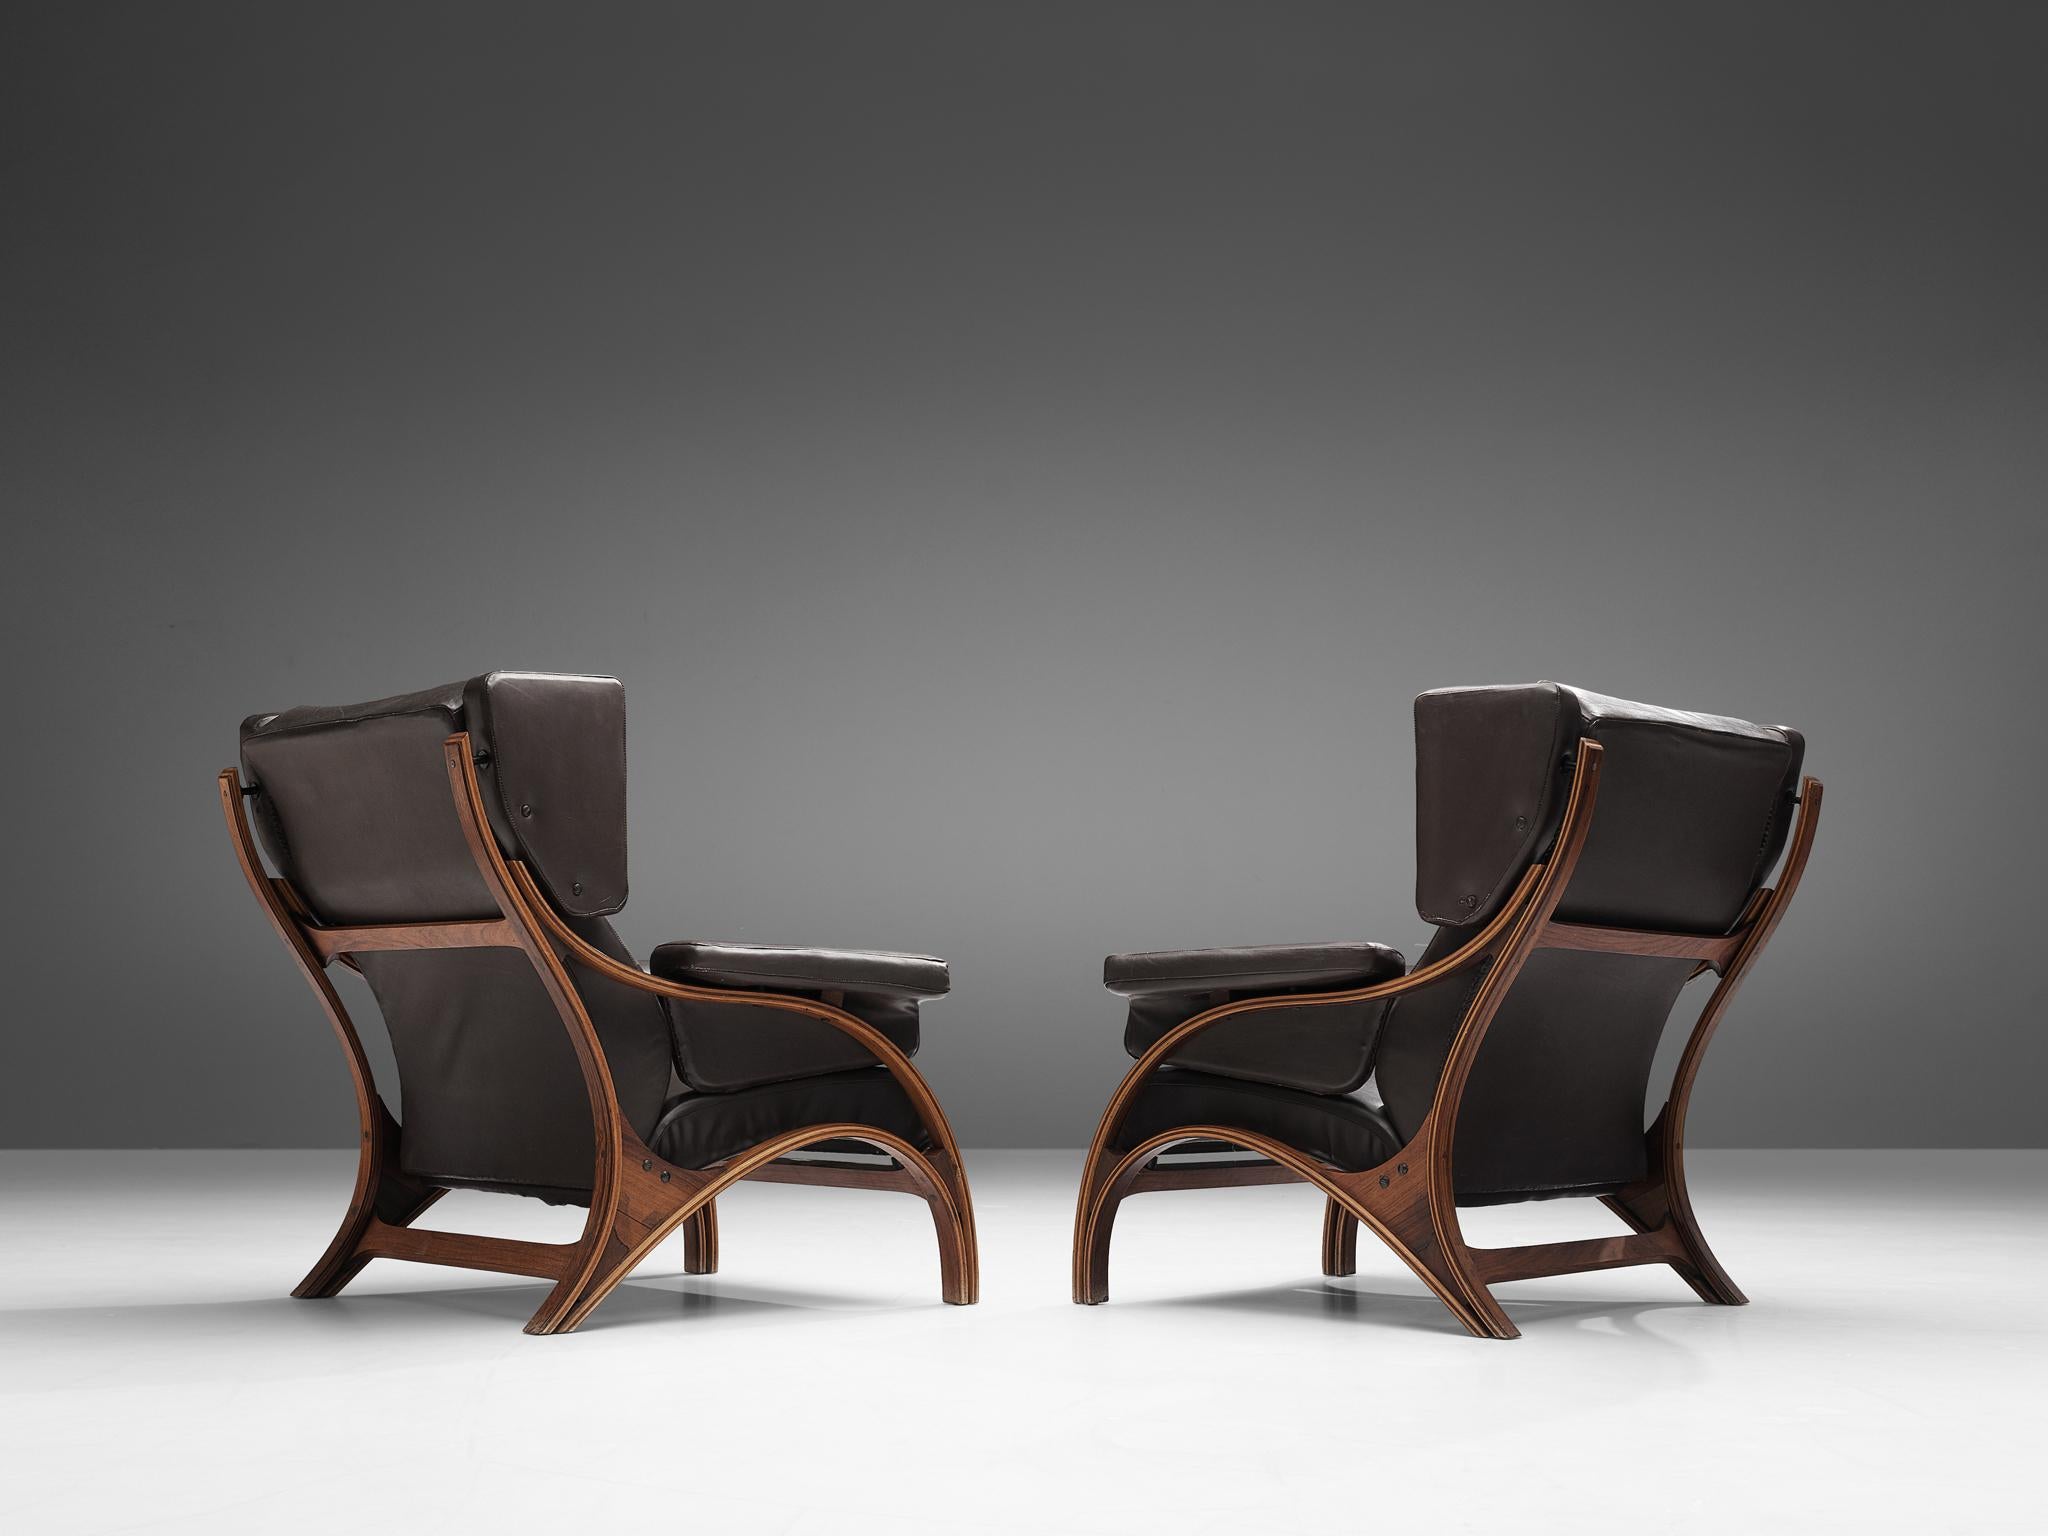 Giampiero Vitelli, paire de chaises longues, contreplaqué, bois, cuir brun foncé, Italie, années 1960

Paire de fauteuils à oreilles italiens aux courbes et aux formes gracieuses par Giampiero Vitelli. L'élément le plus intéressant est le cadre en